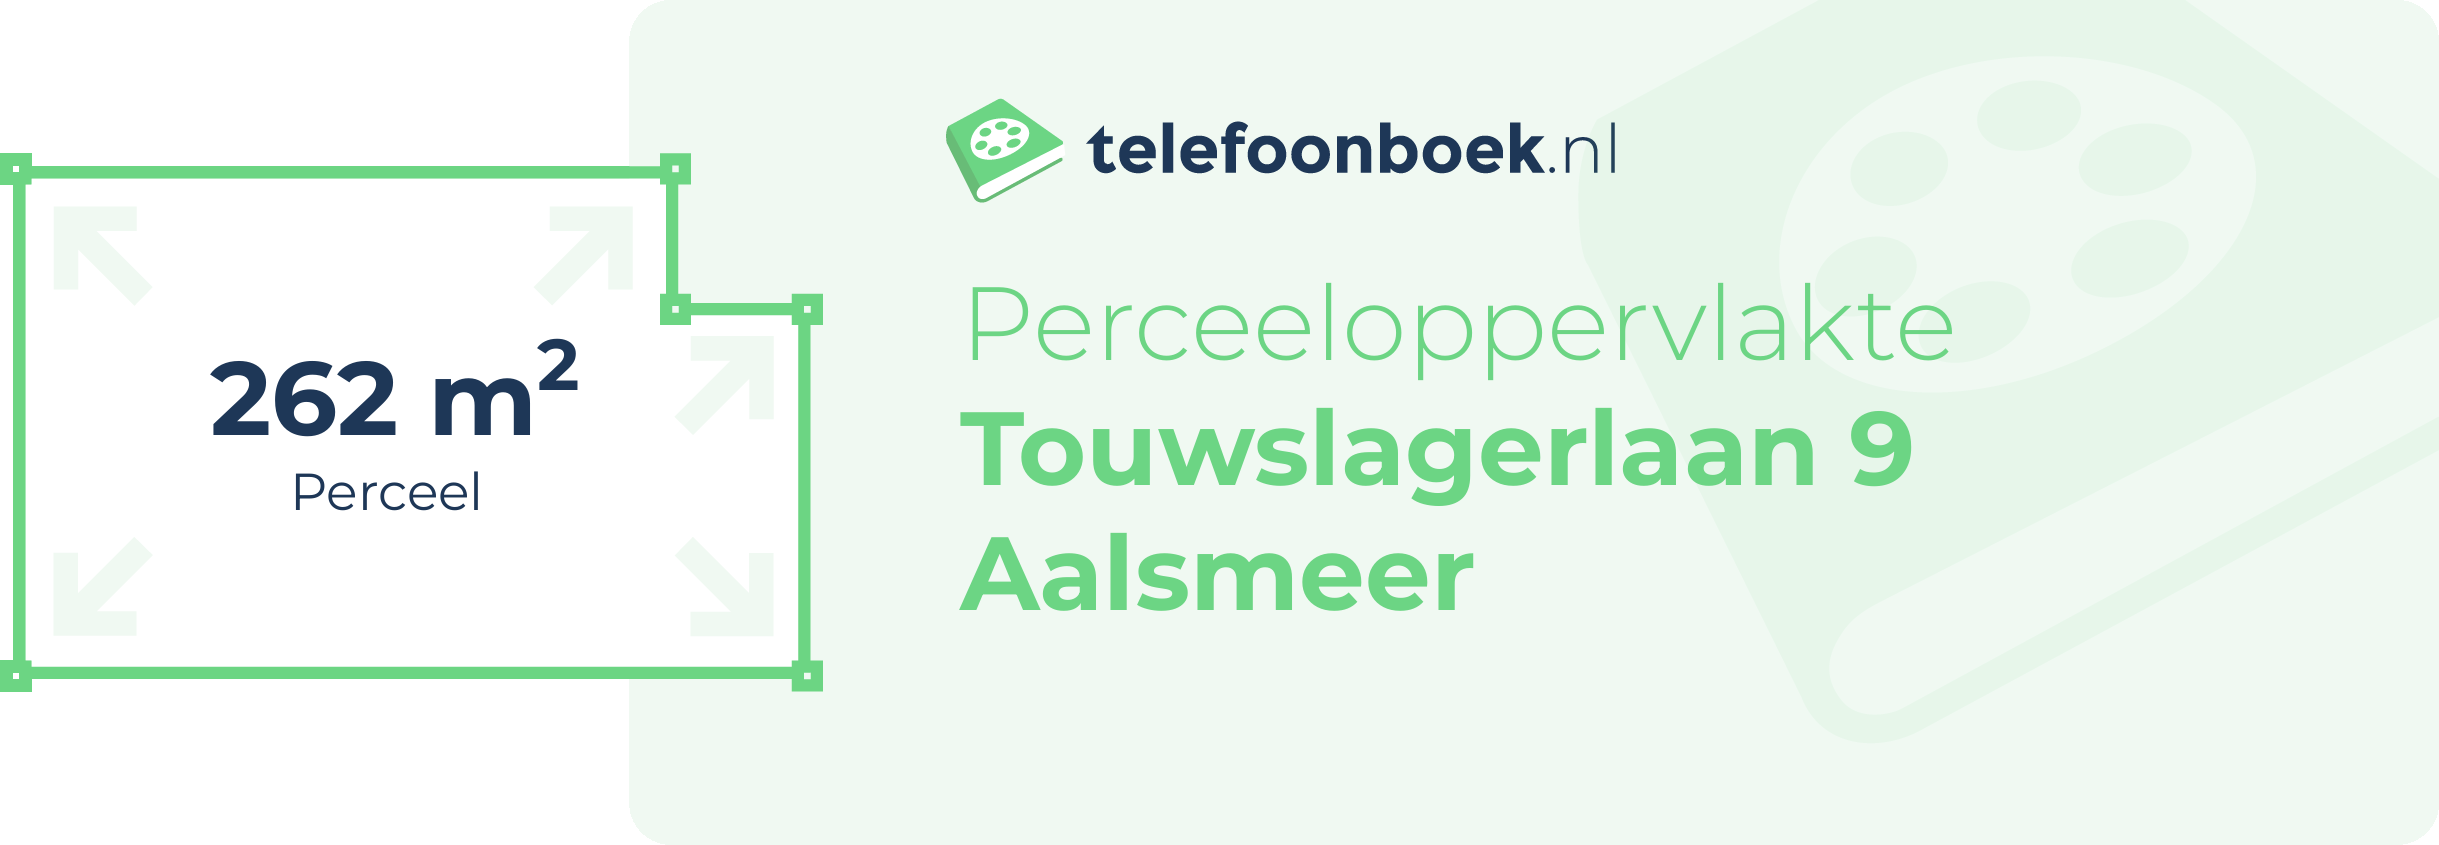 Perceeloppervlakte Touwslagerlaan 9 Aalsmeer